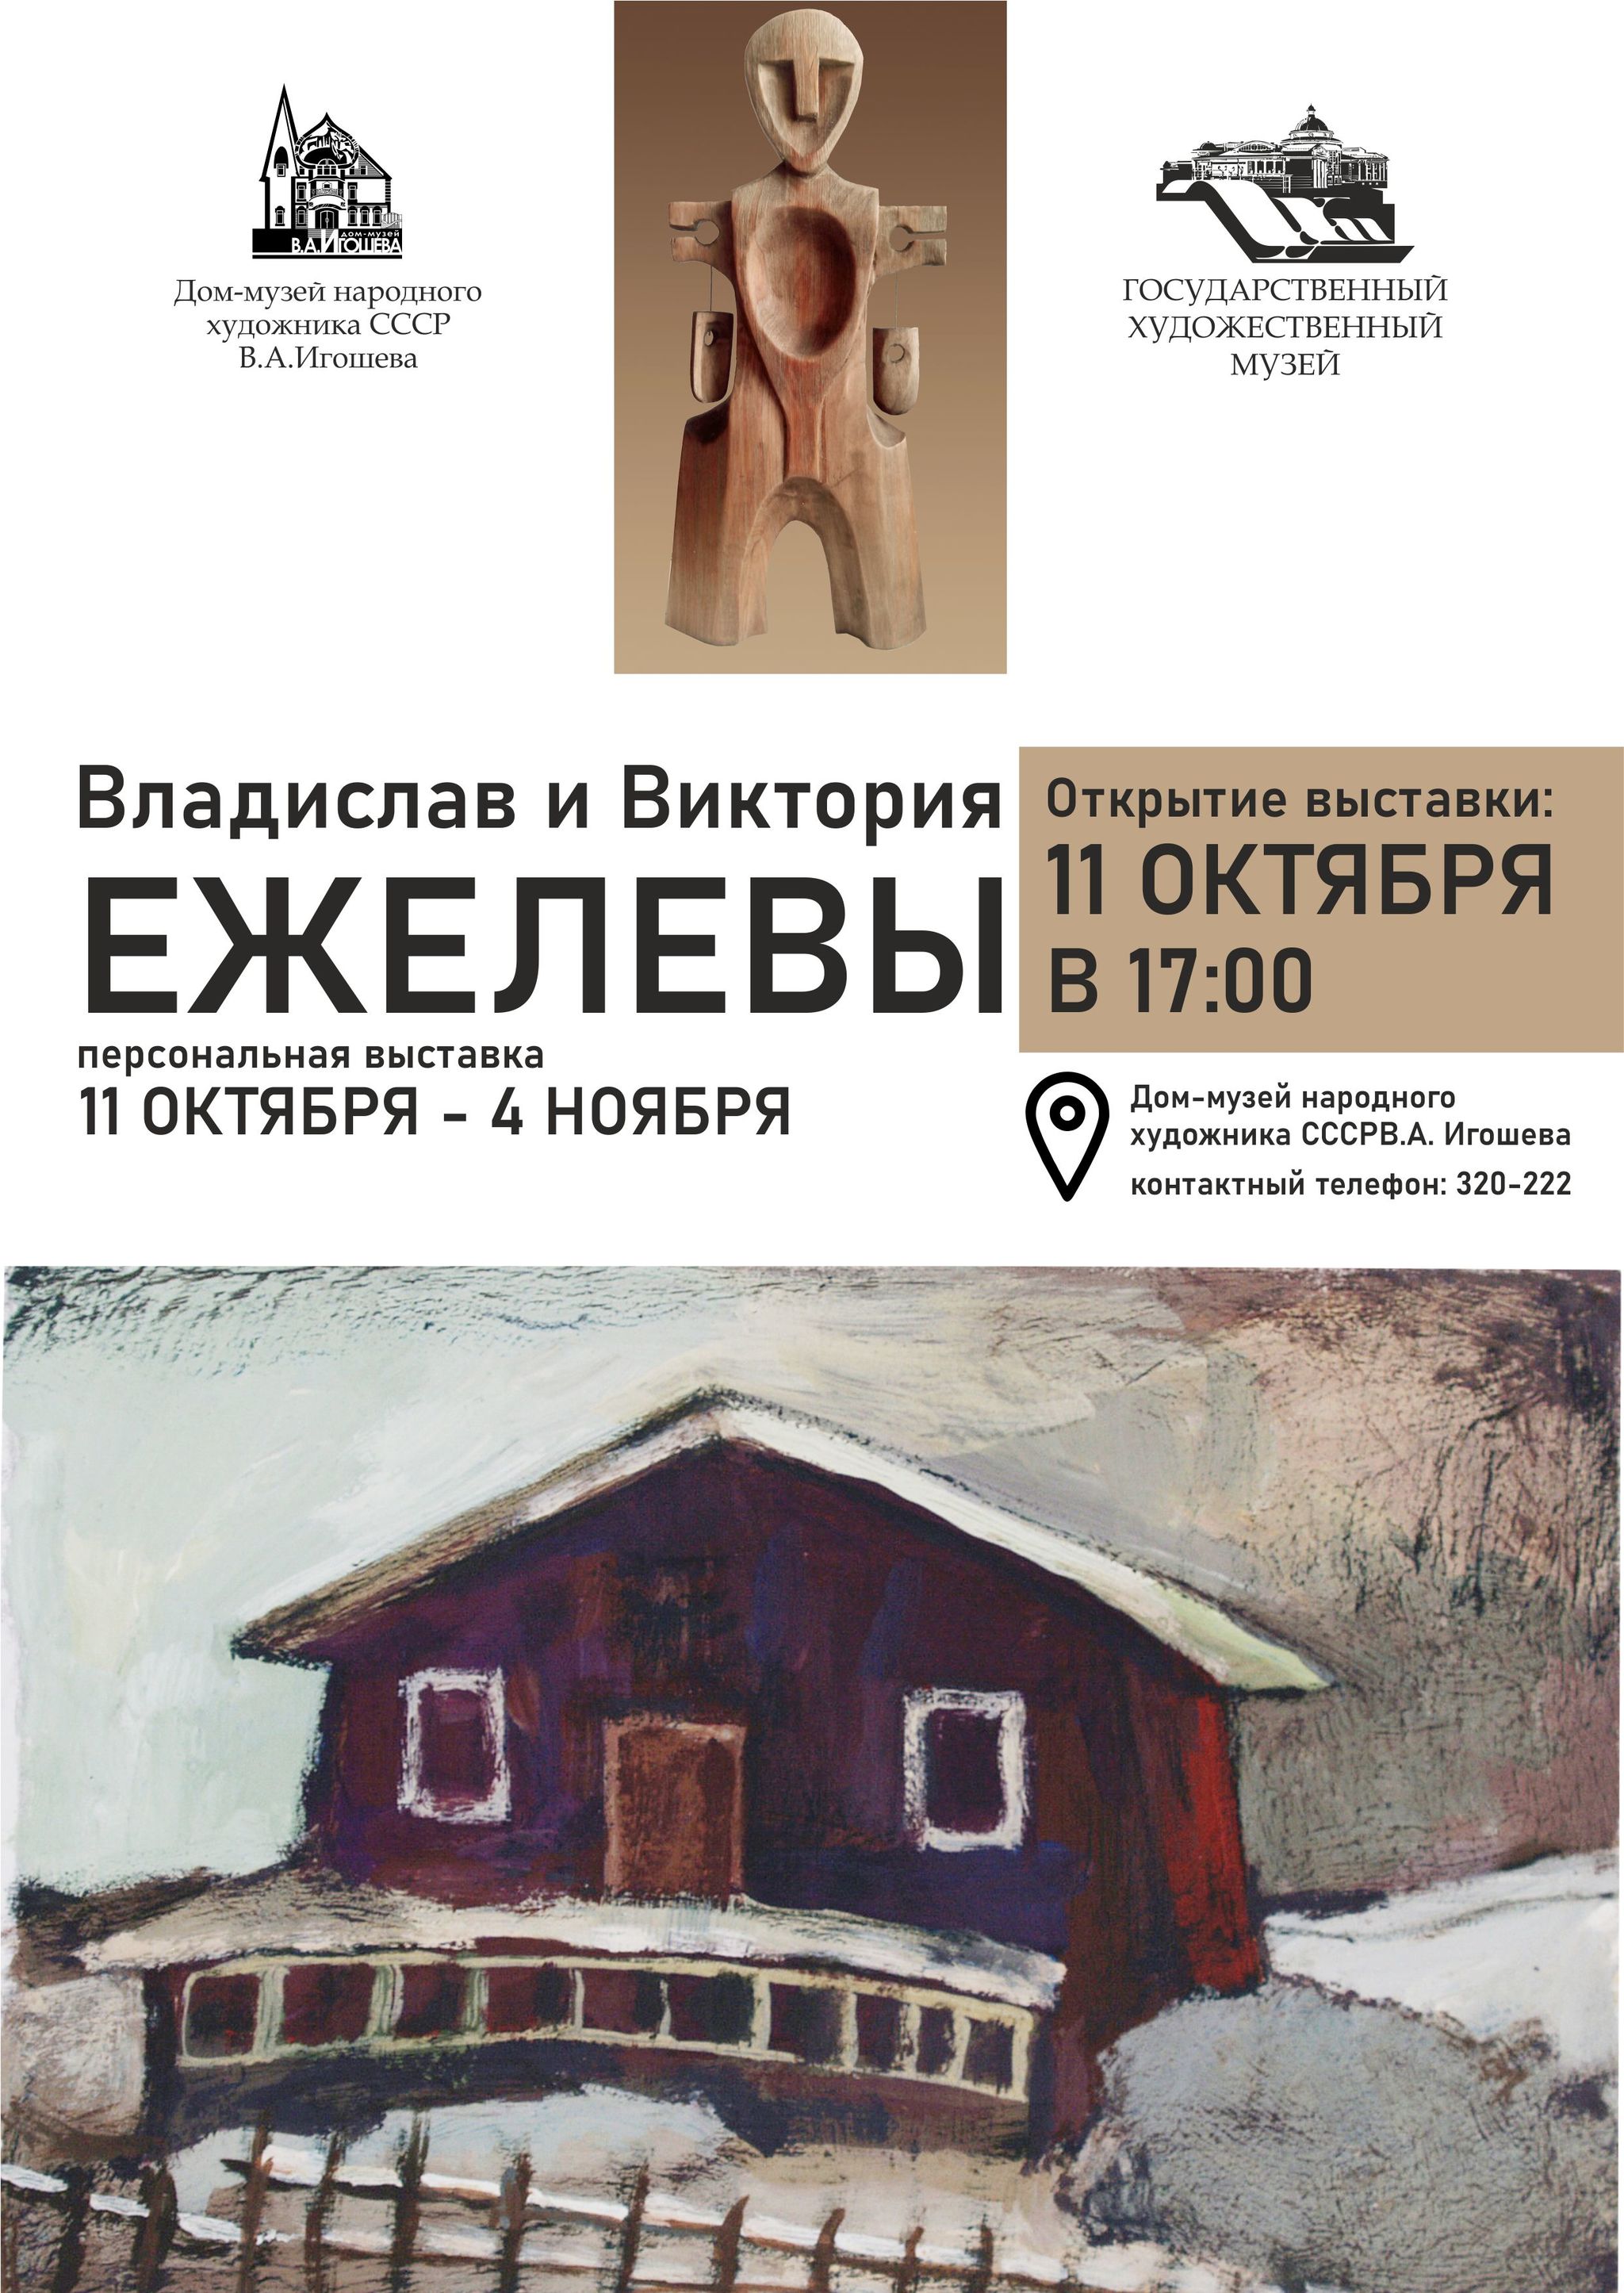 В музее В.А. Игошева откроется новая персональная выставка Ежелевых 